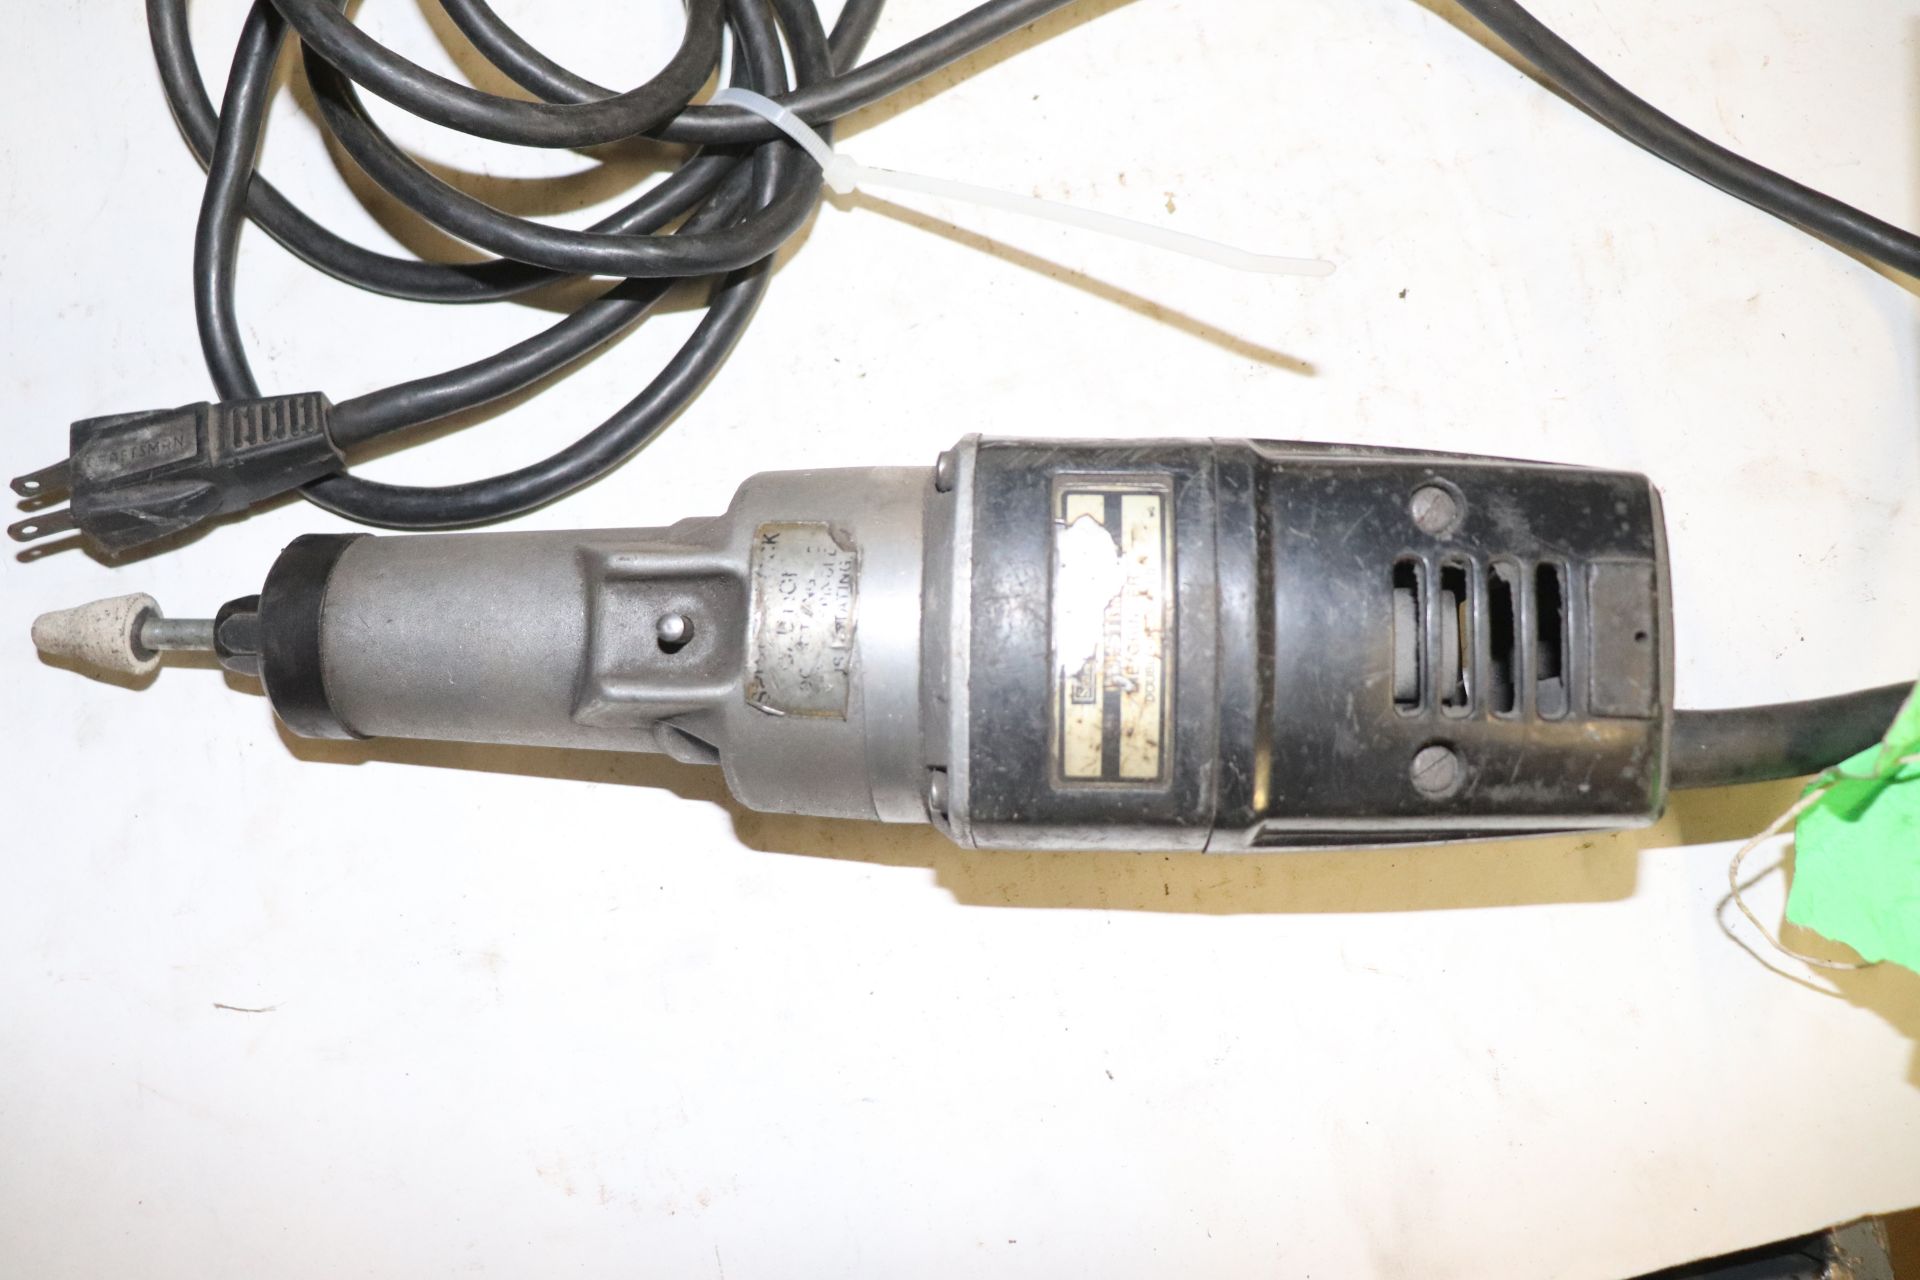 Sears die grinder - Image 2 of 2